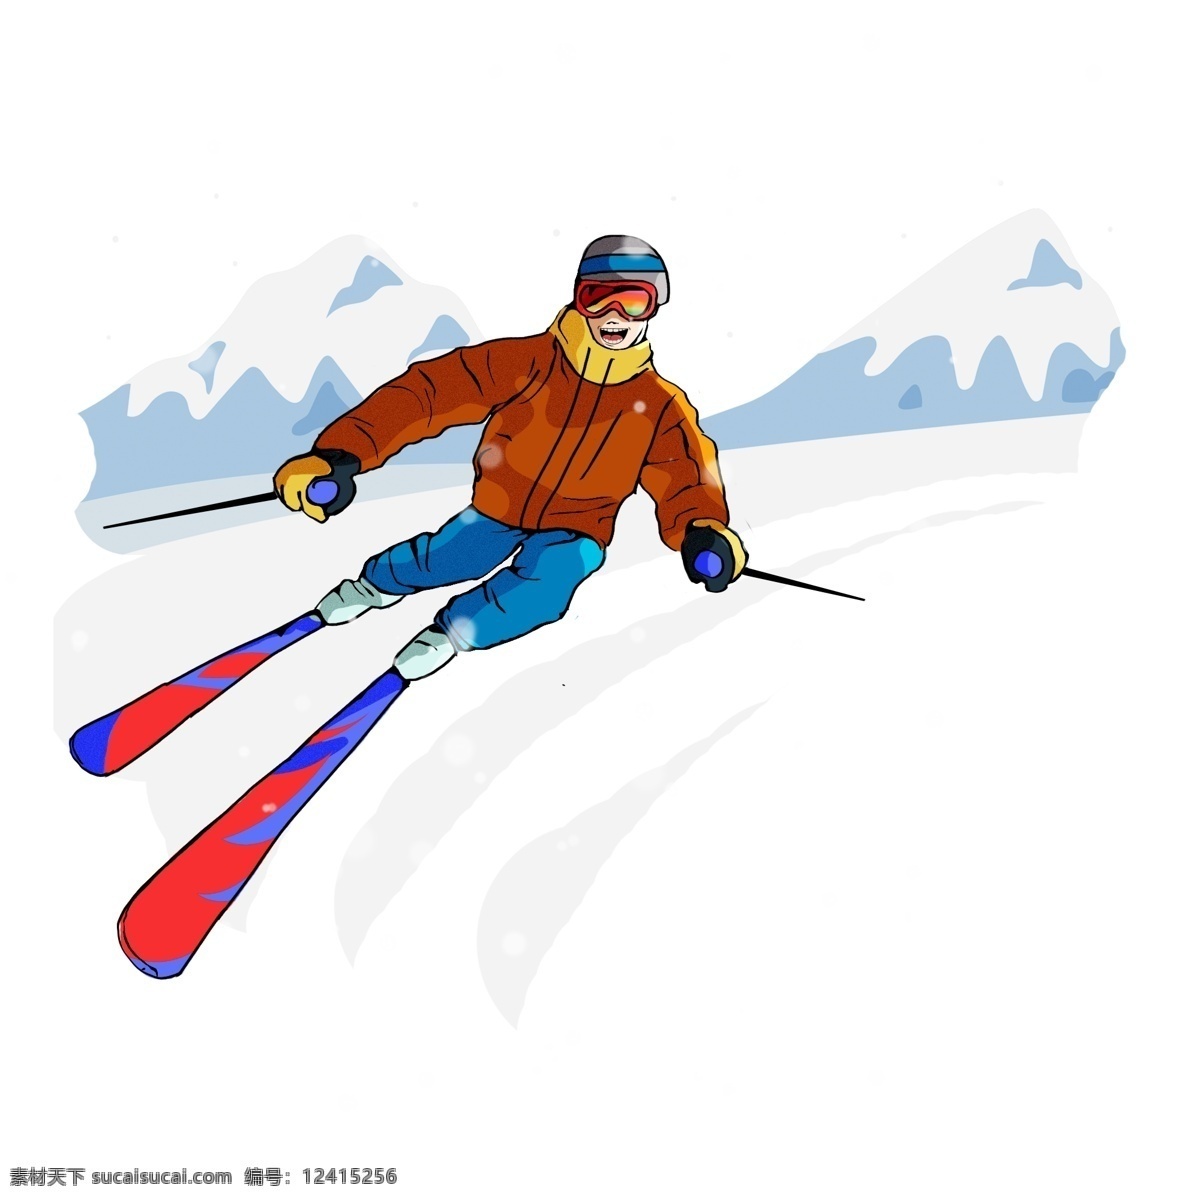 手绘 冬季 滑雪 人物 图 保暖 png图 矢量图 下雪 坡道 体育 运动 刺激 冬天 雪山